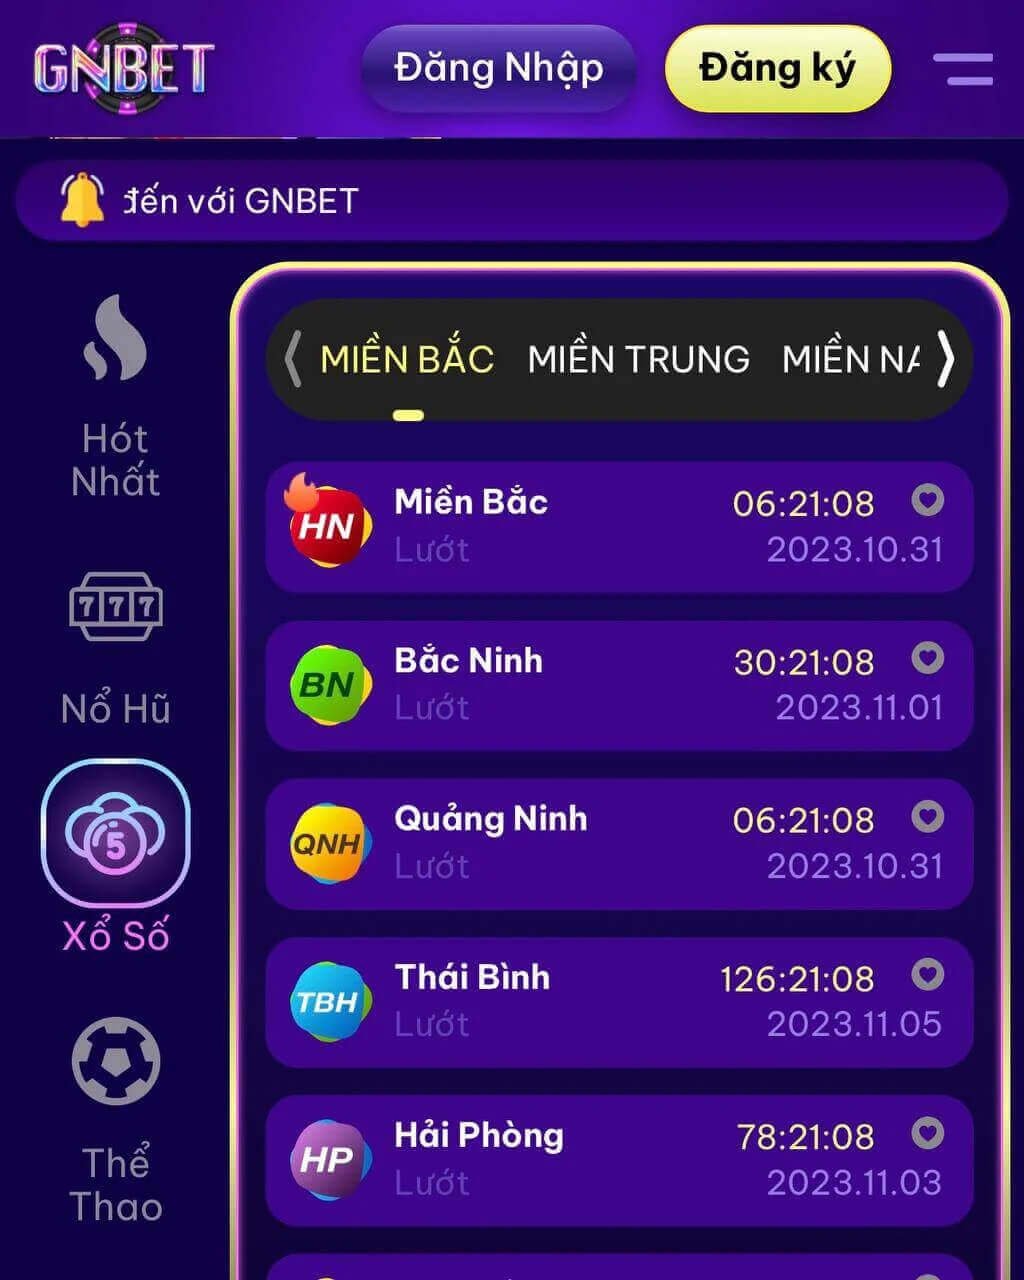 Gnbet - App chơi xổ số miền bắc mới nhất